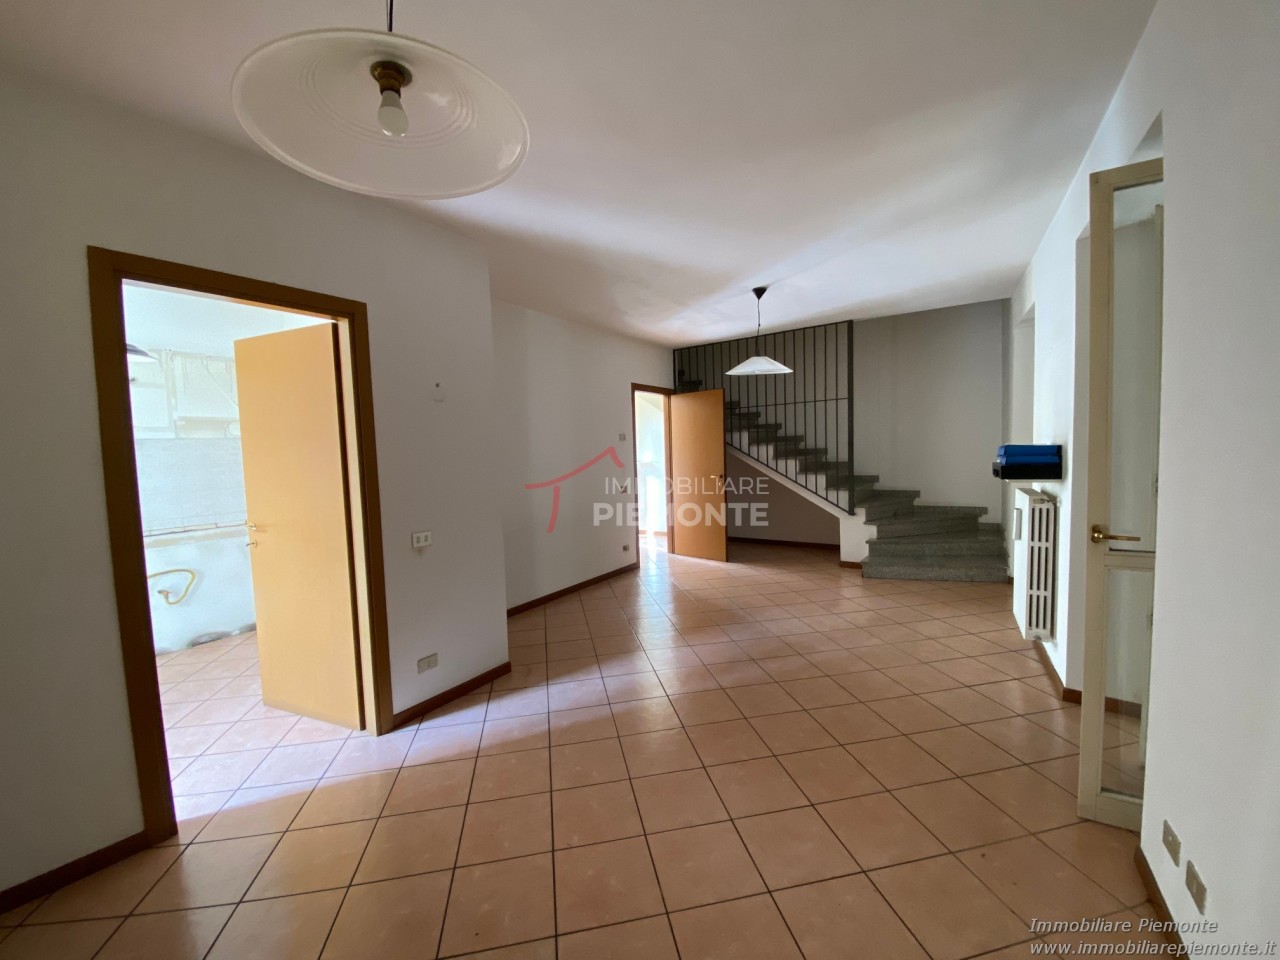 Appartamento in affitto a Borgomanero, 5 locali, prezzo € 600 | CambioCasa.it